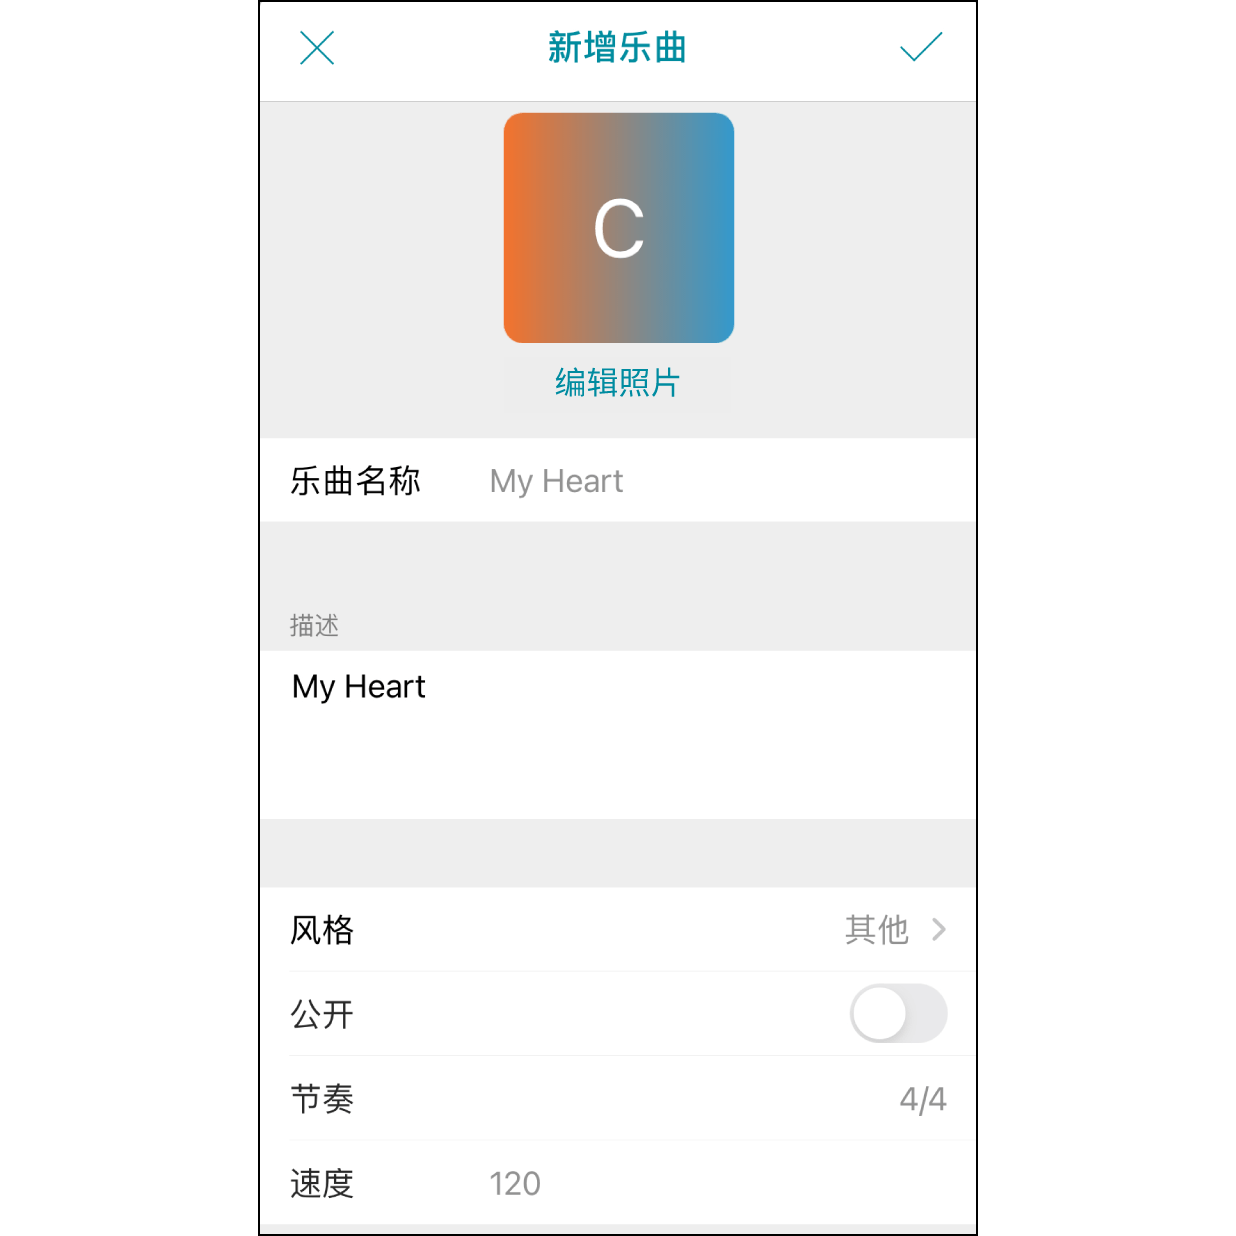 3. 编辑乐曲资讯 之后会直接开启 Muro Box app。若已经登入帐号，则会进入编辑输入的乐曲资讯的画面。